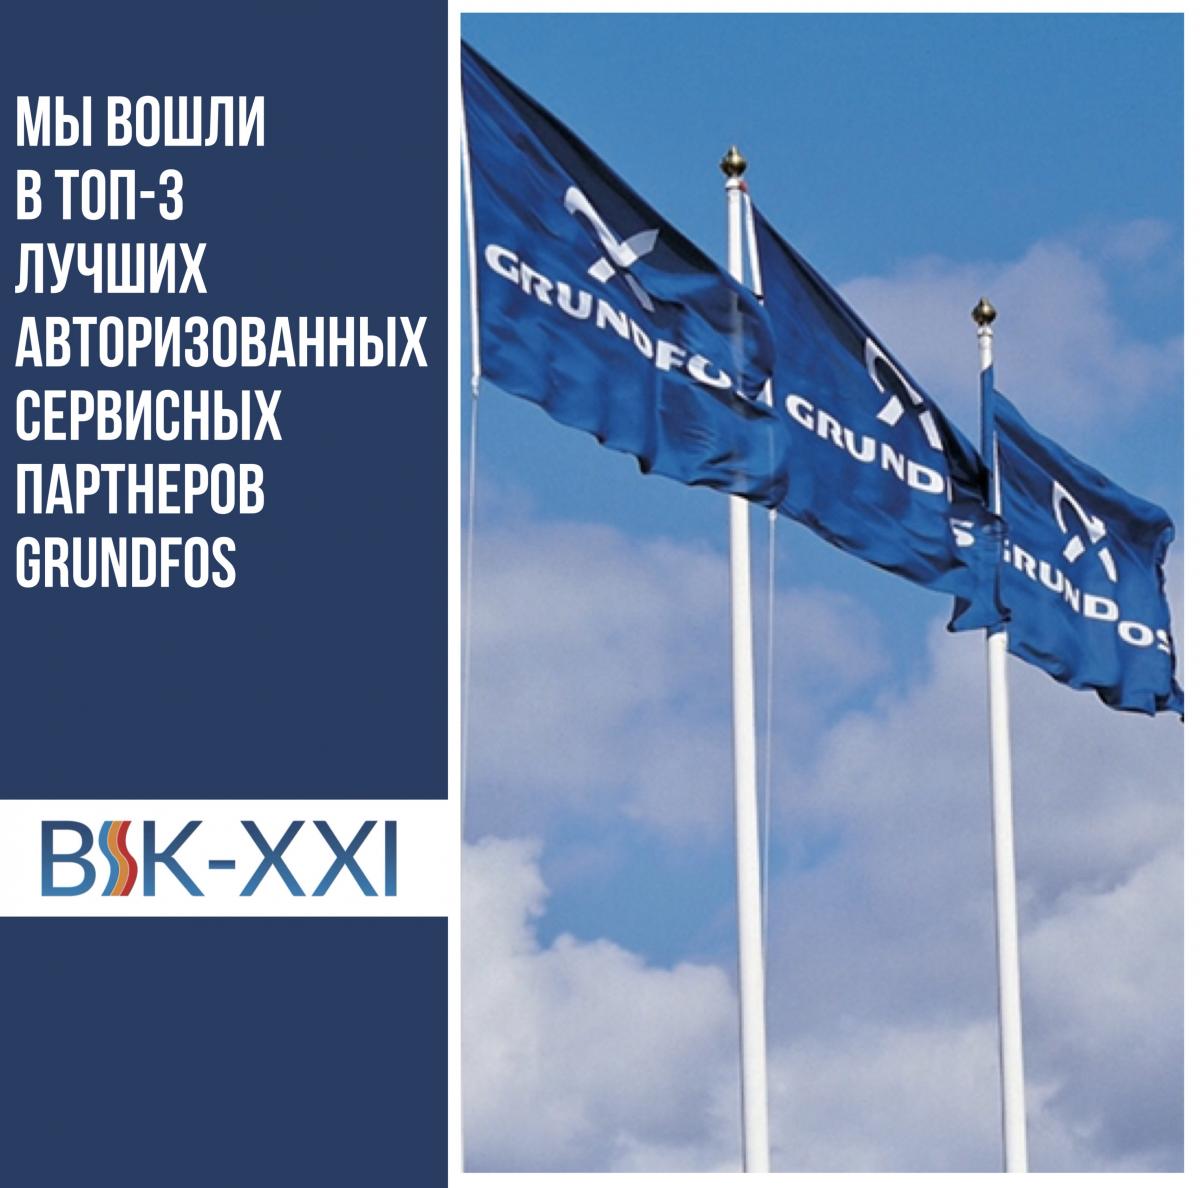 Сервисный центр «ВИК-XXI» вошёл в топ-3 лучших авторизованных сервисных партнеров Grundfos в Восточной Европе 